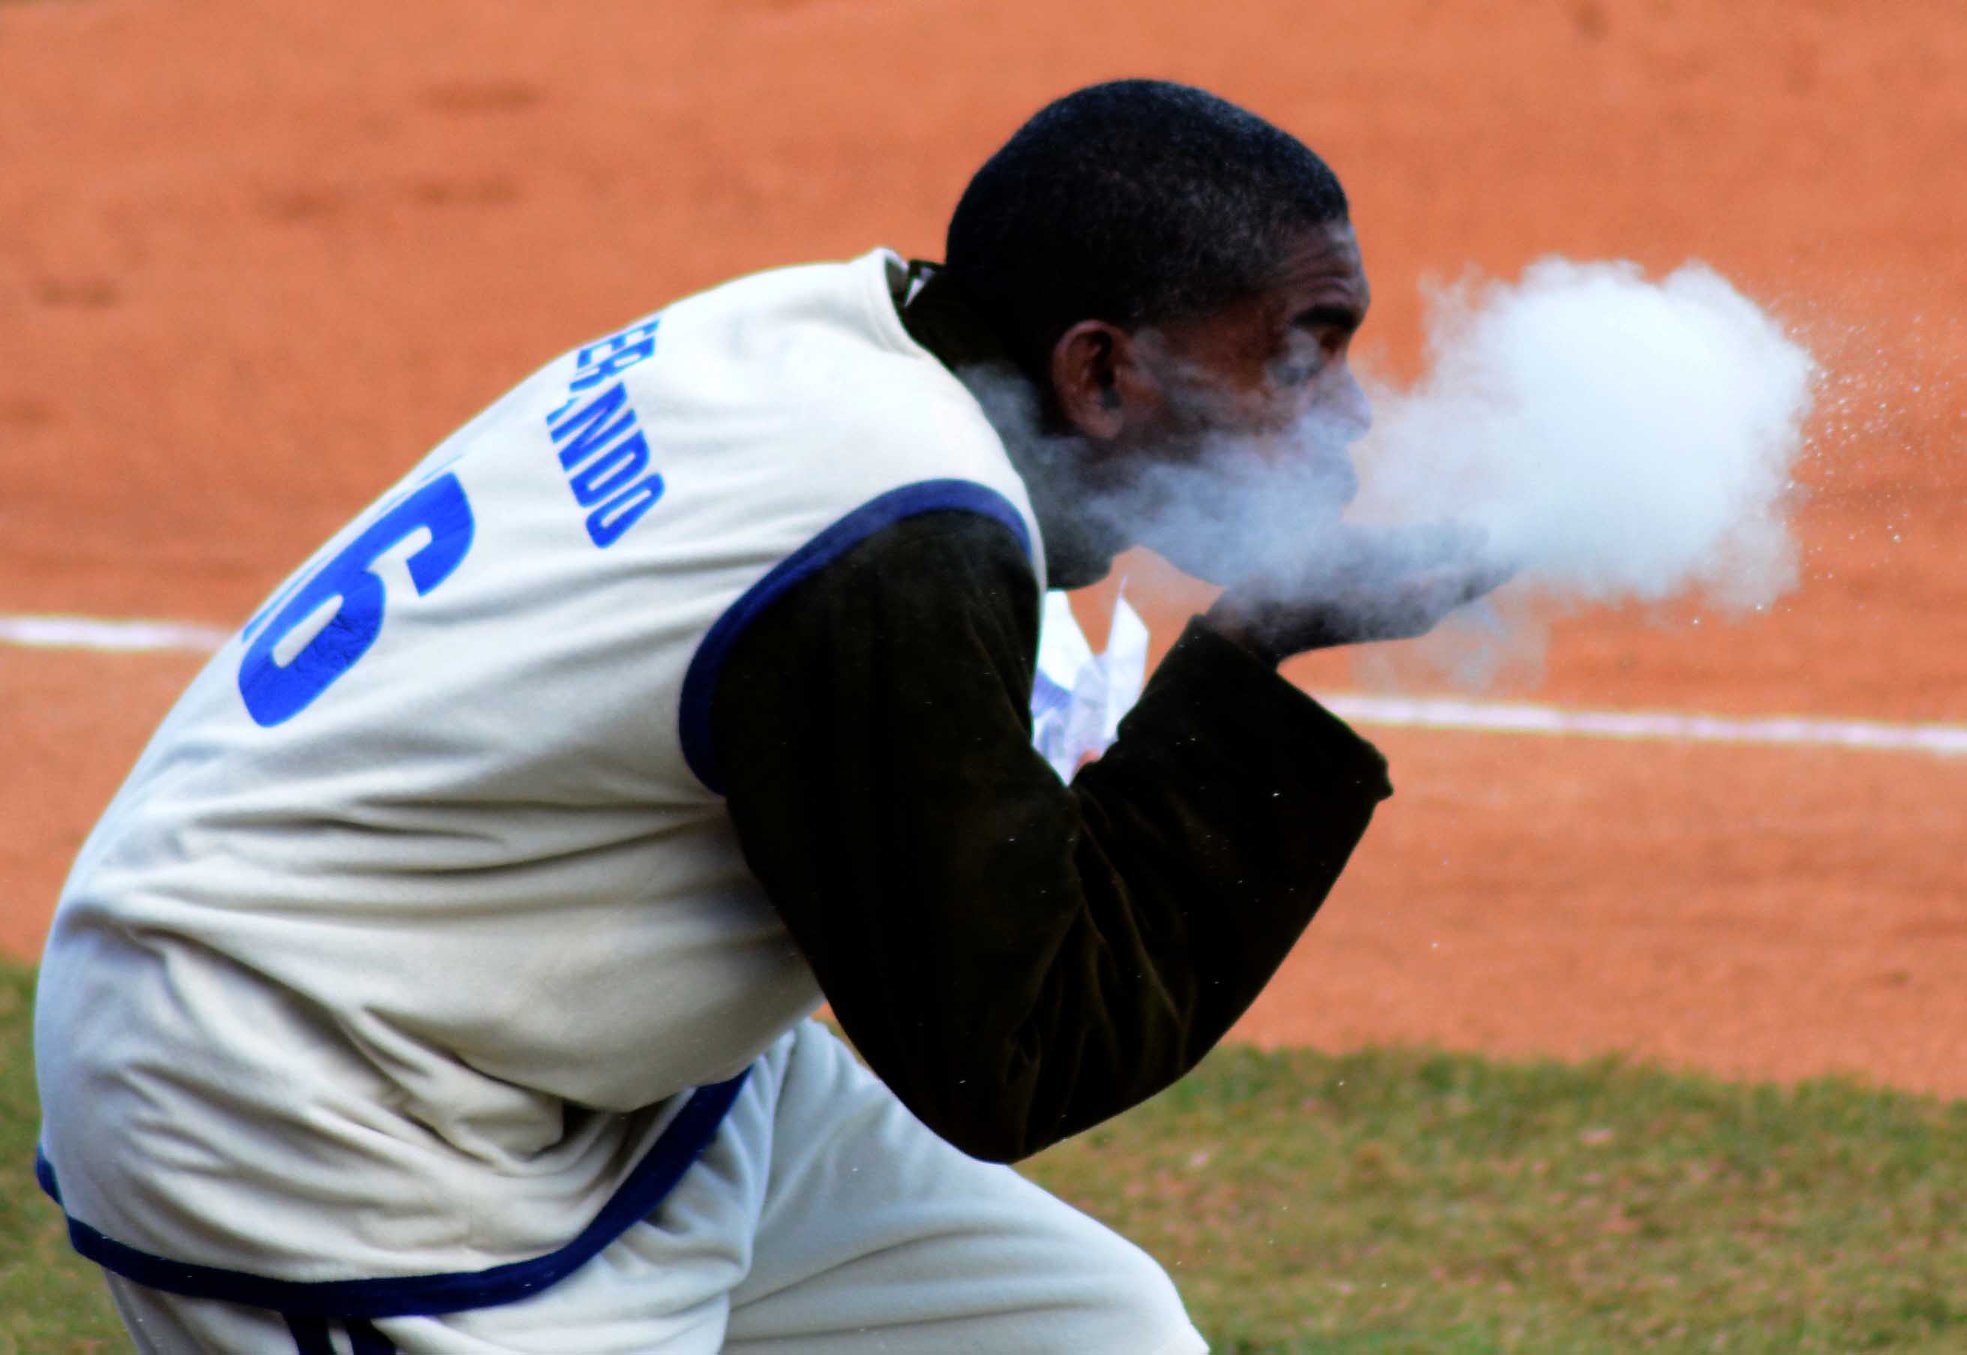 La santería condimenta la final del béisbol cubano - OnCubaNews